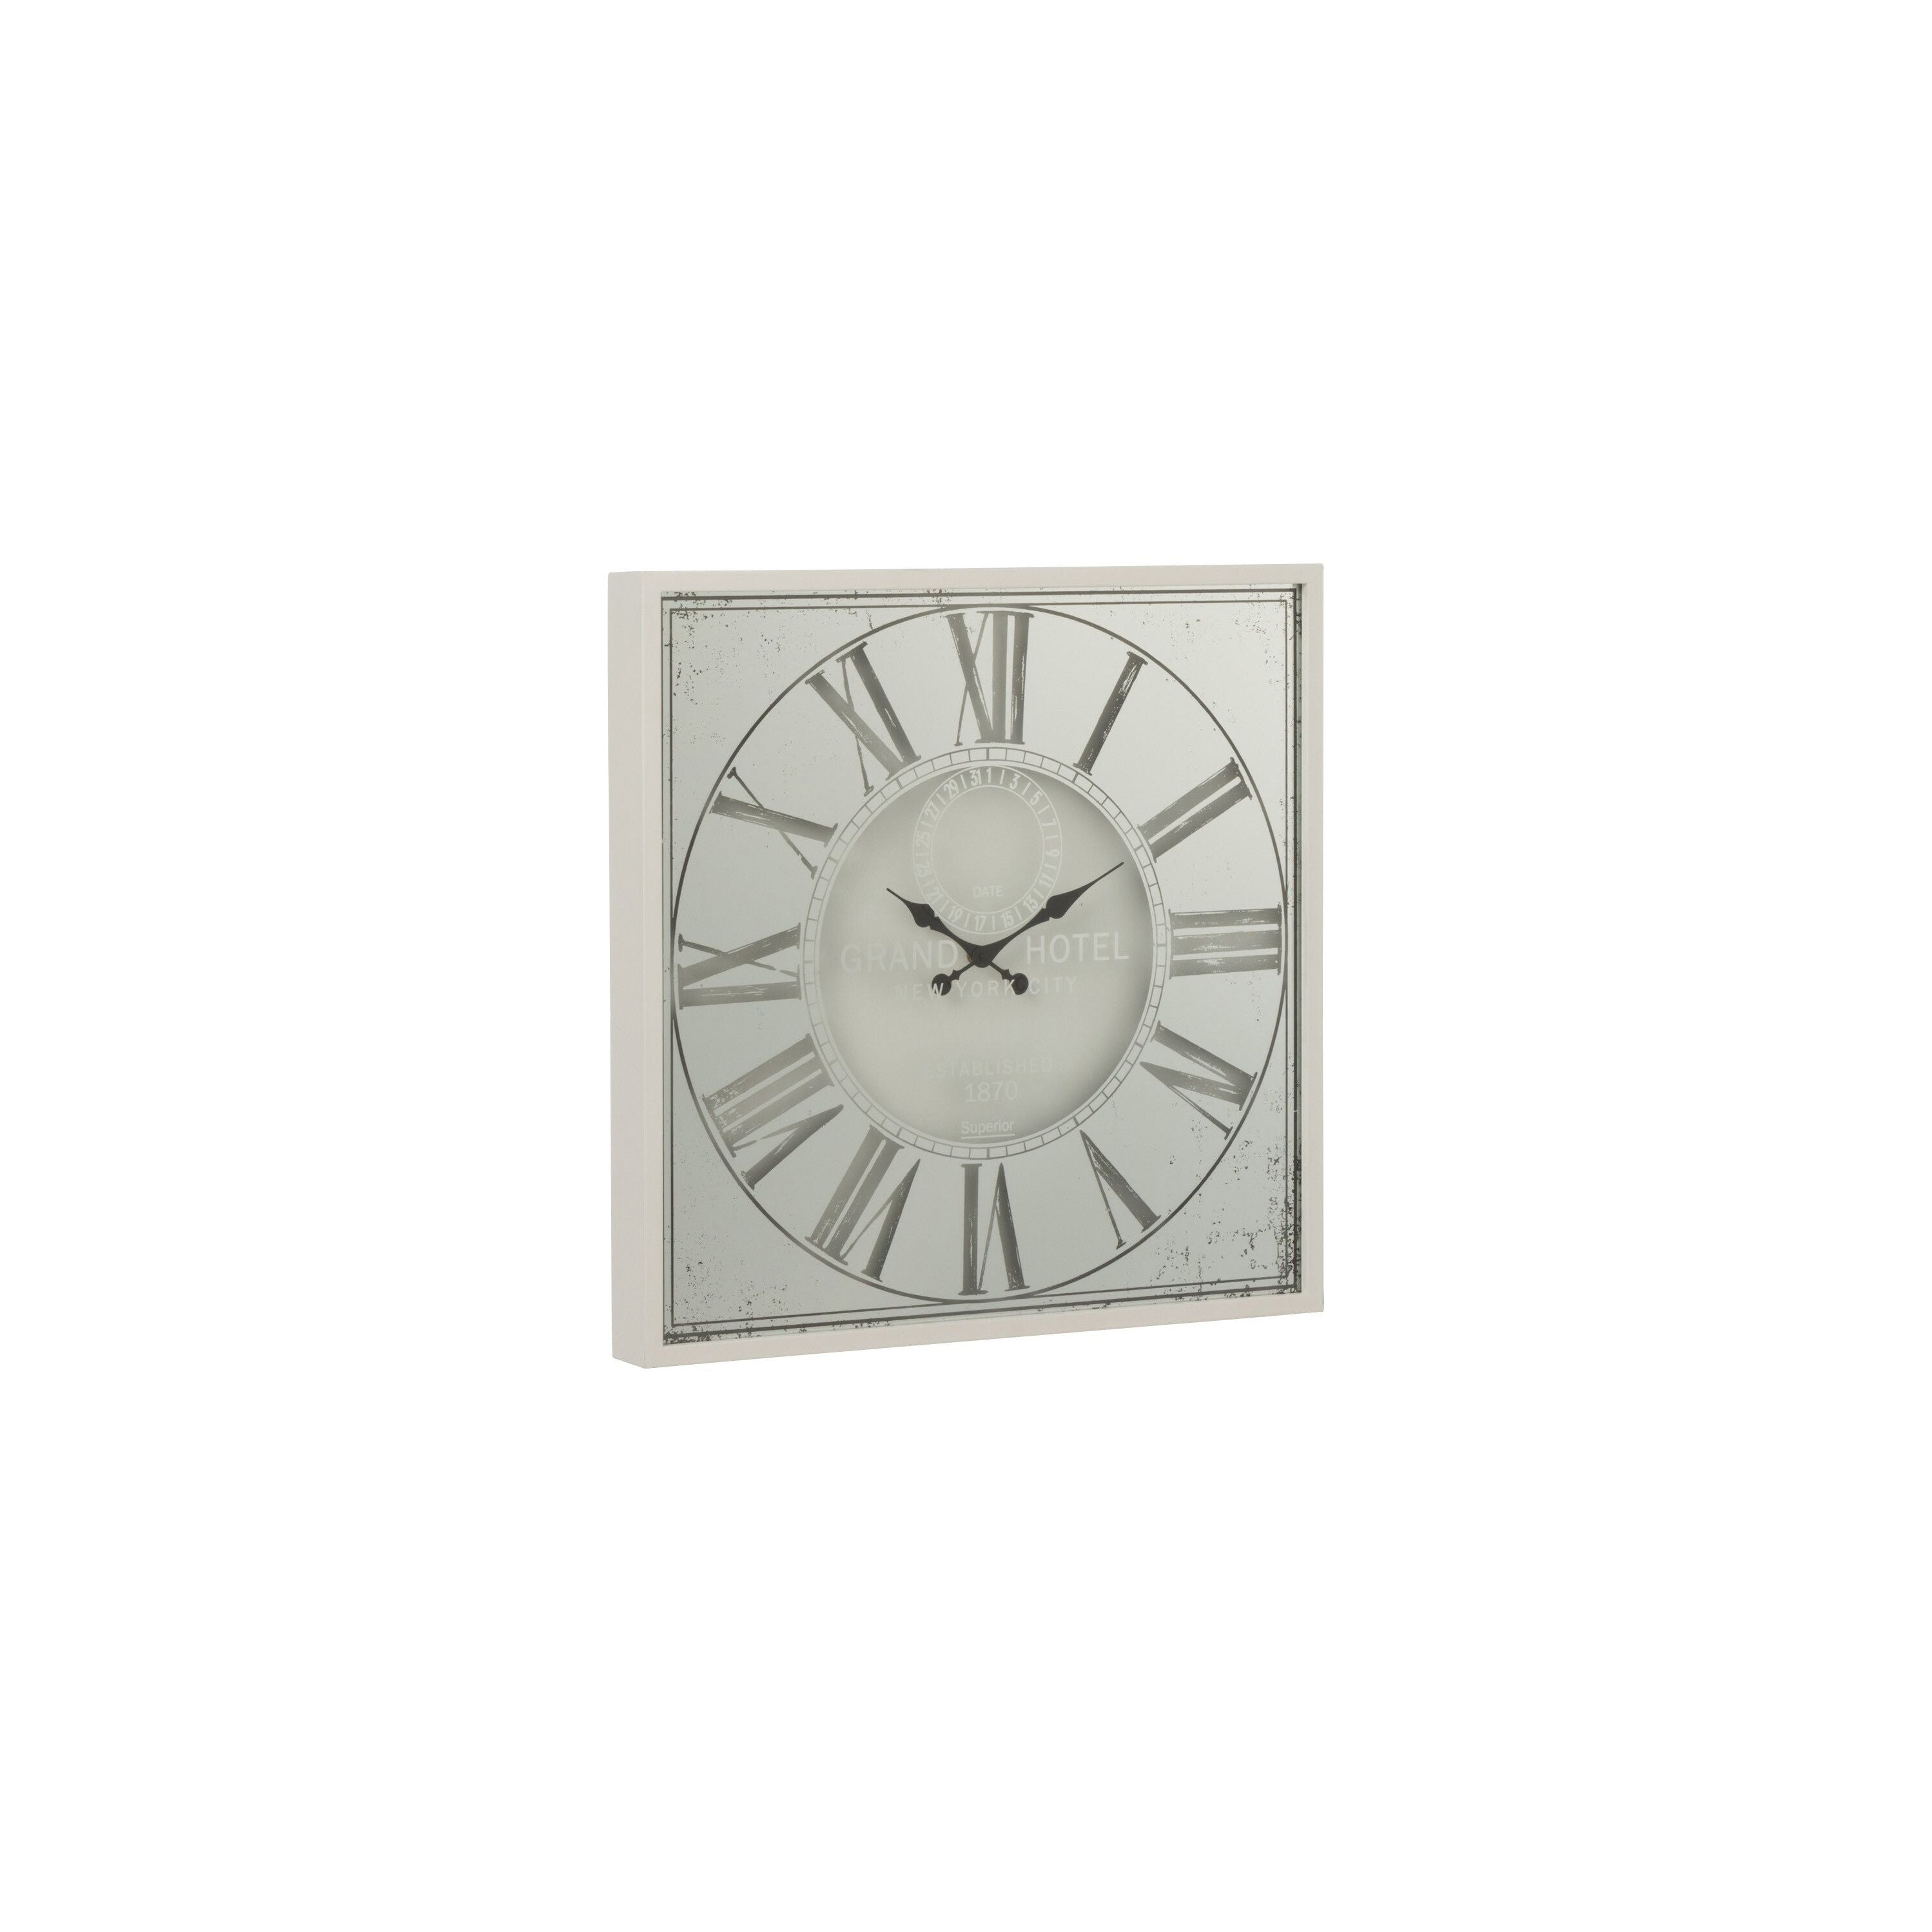 Clock Square Roman Numerals Mirror Metal White Small